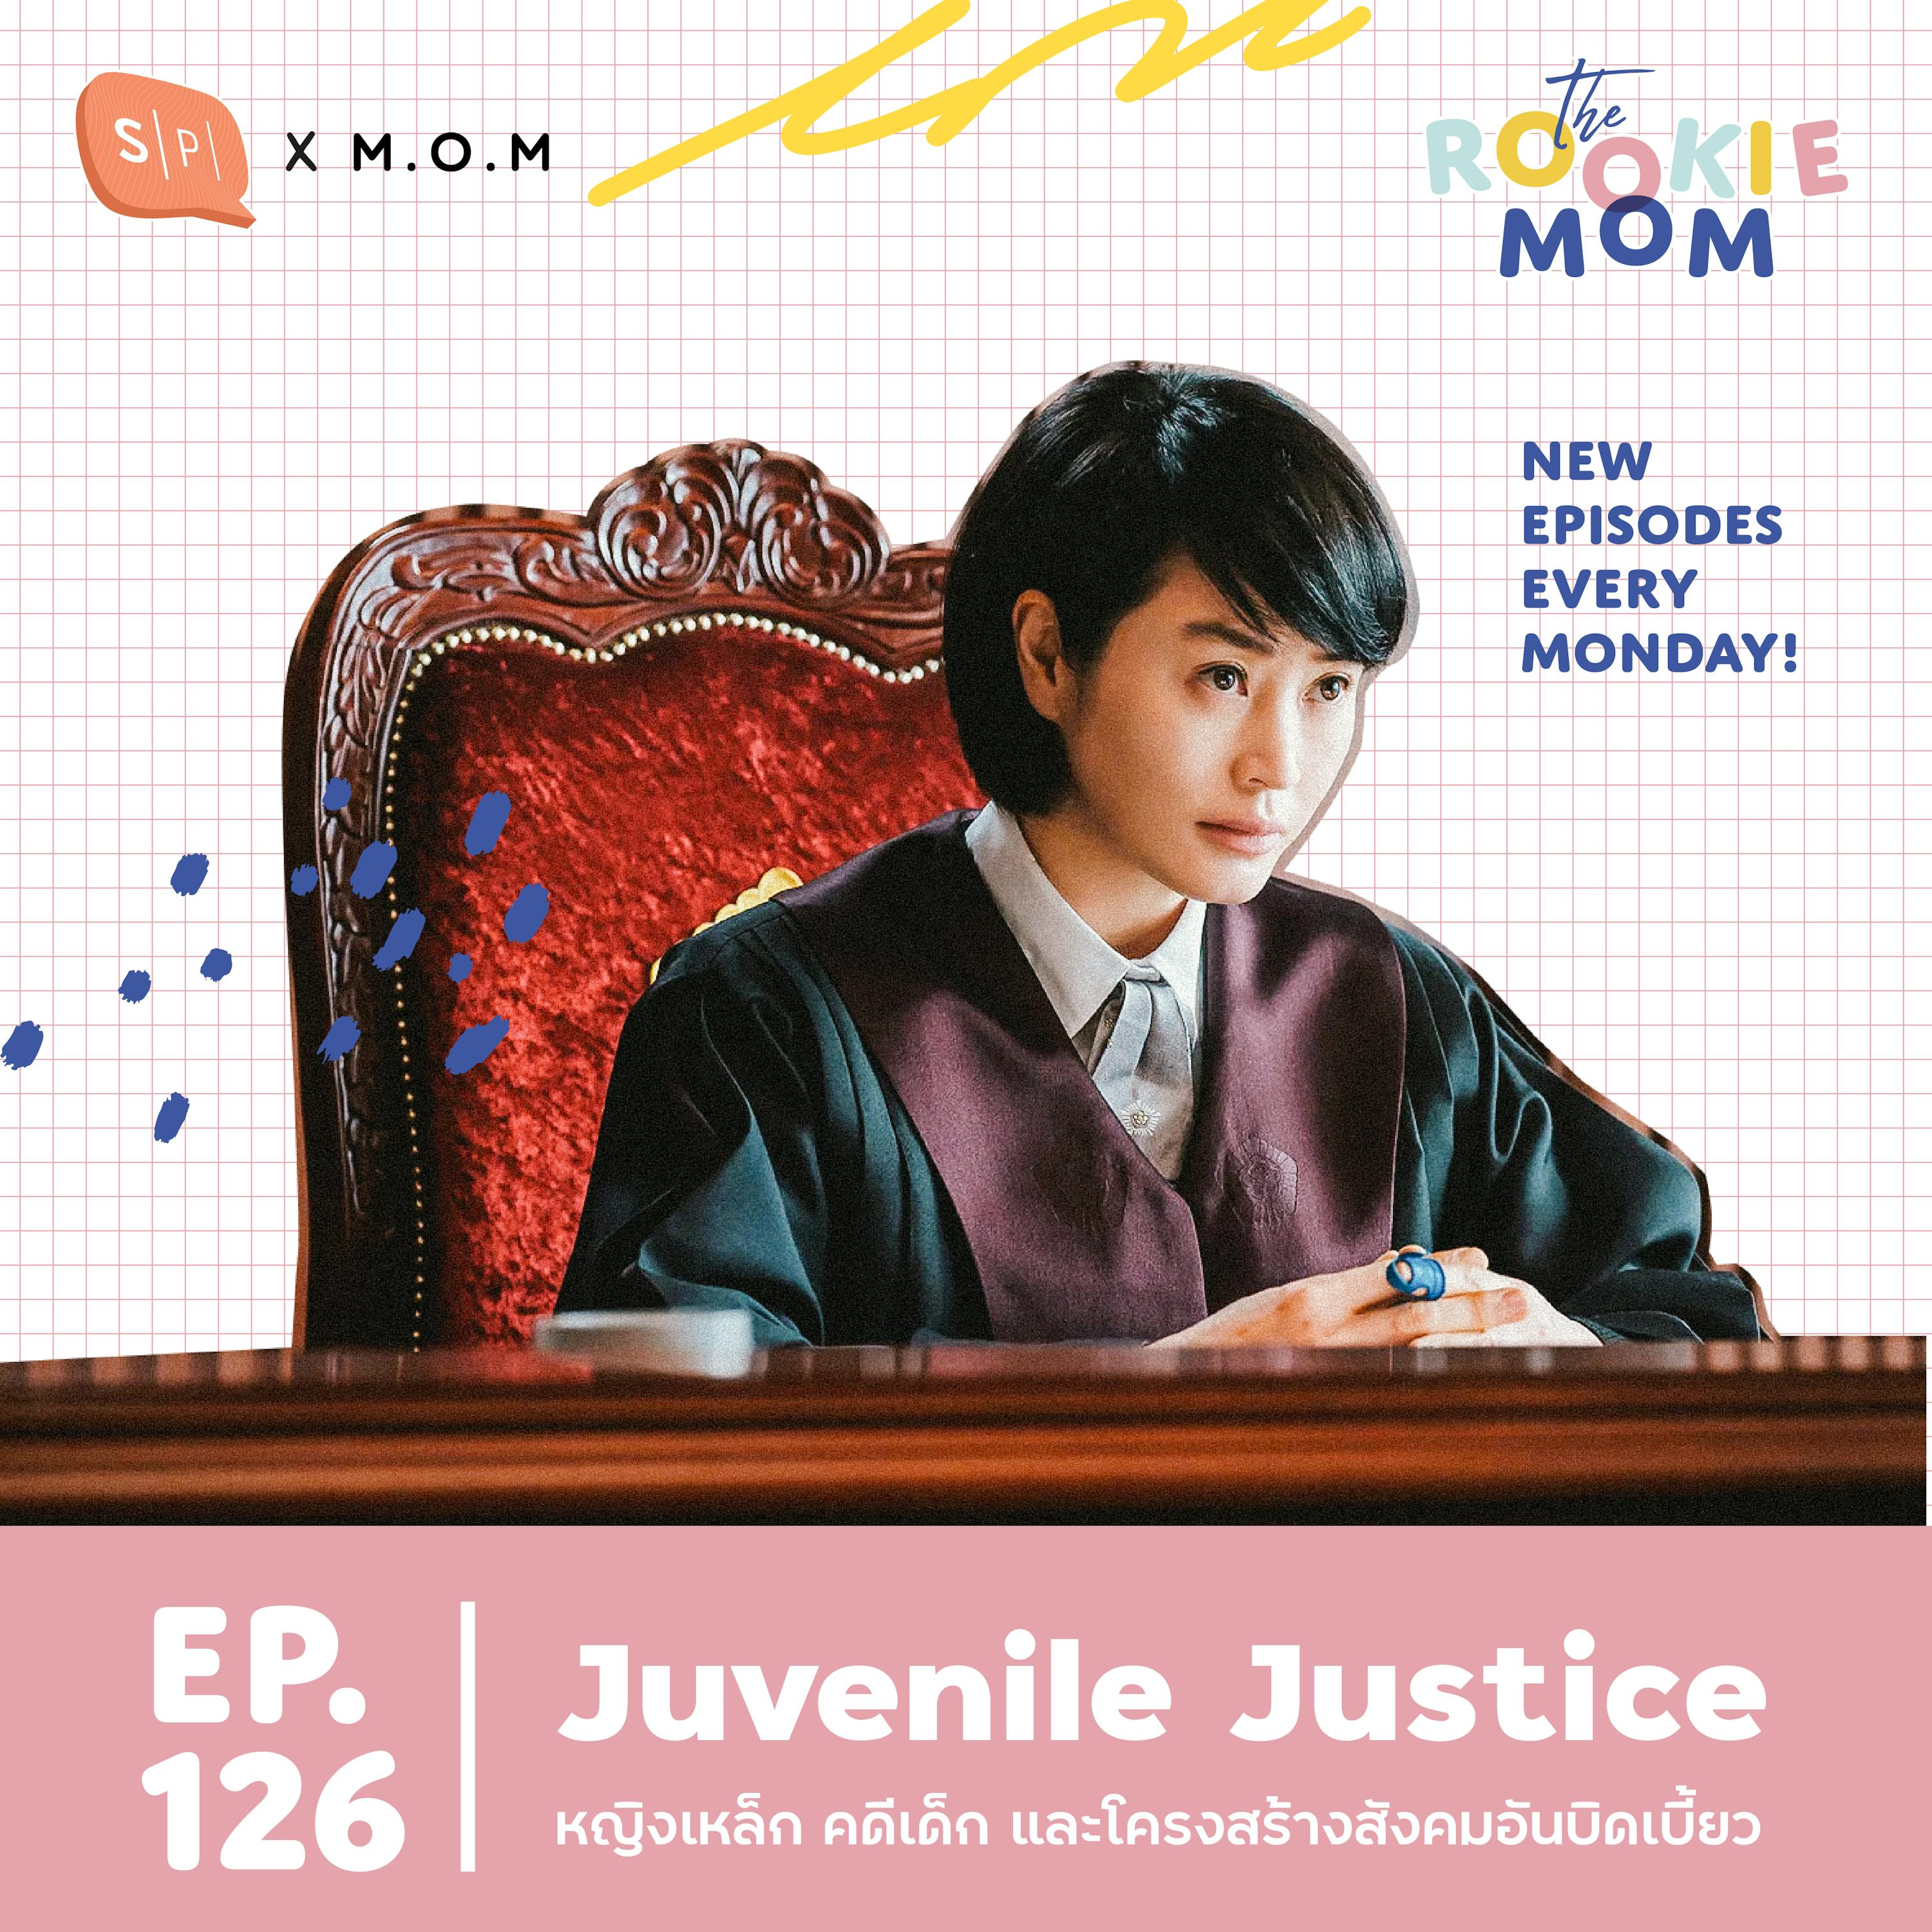 Juvenile Justice หญิงเหล็ก คดีเด็ก และโครงสร้างสังคมอันบิดเบี้ยว | EP126